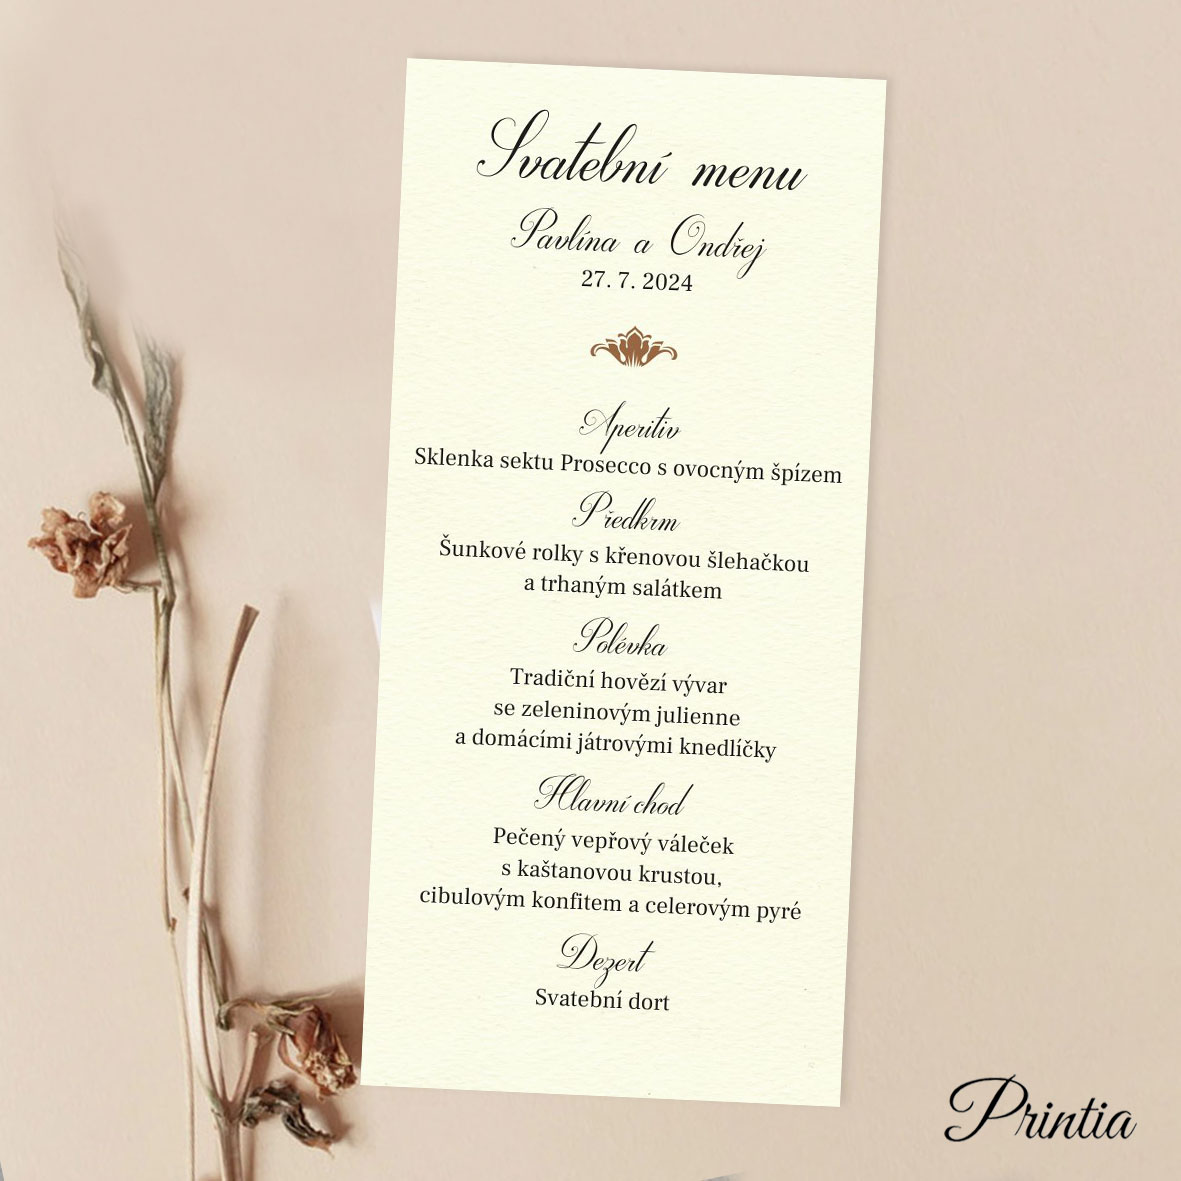 A simple creamy wedding menu